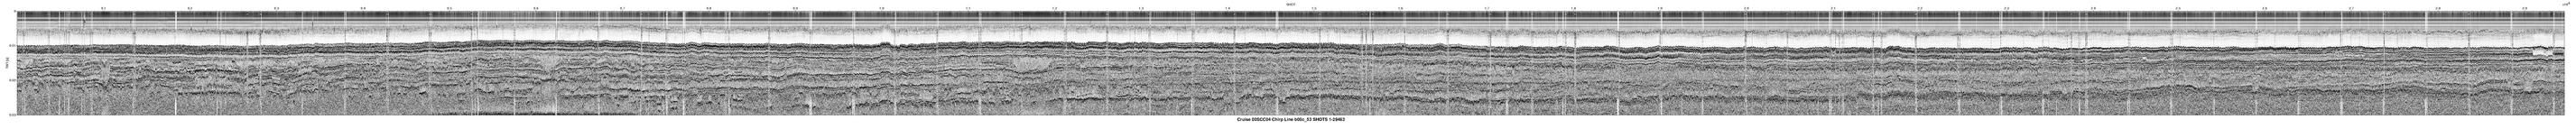 00SCC04 b00c_53 seismic profile image